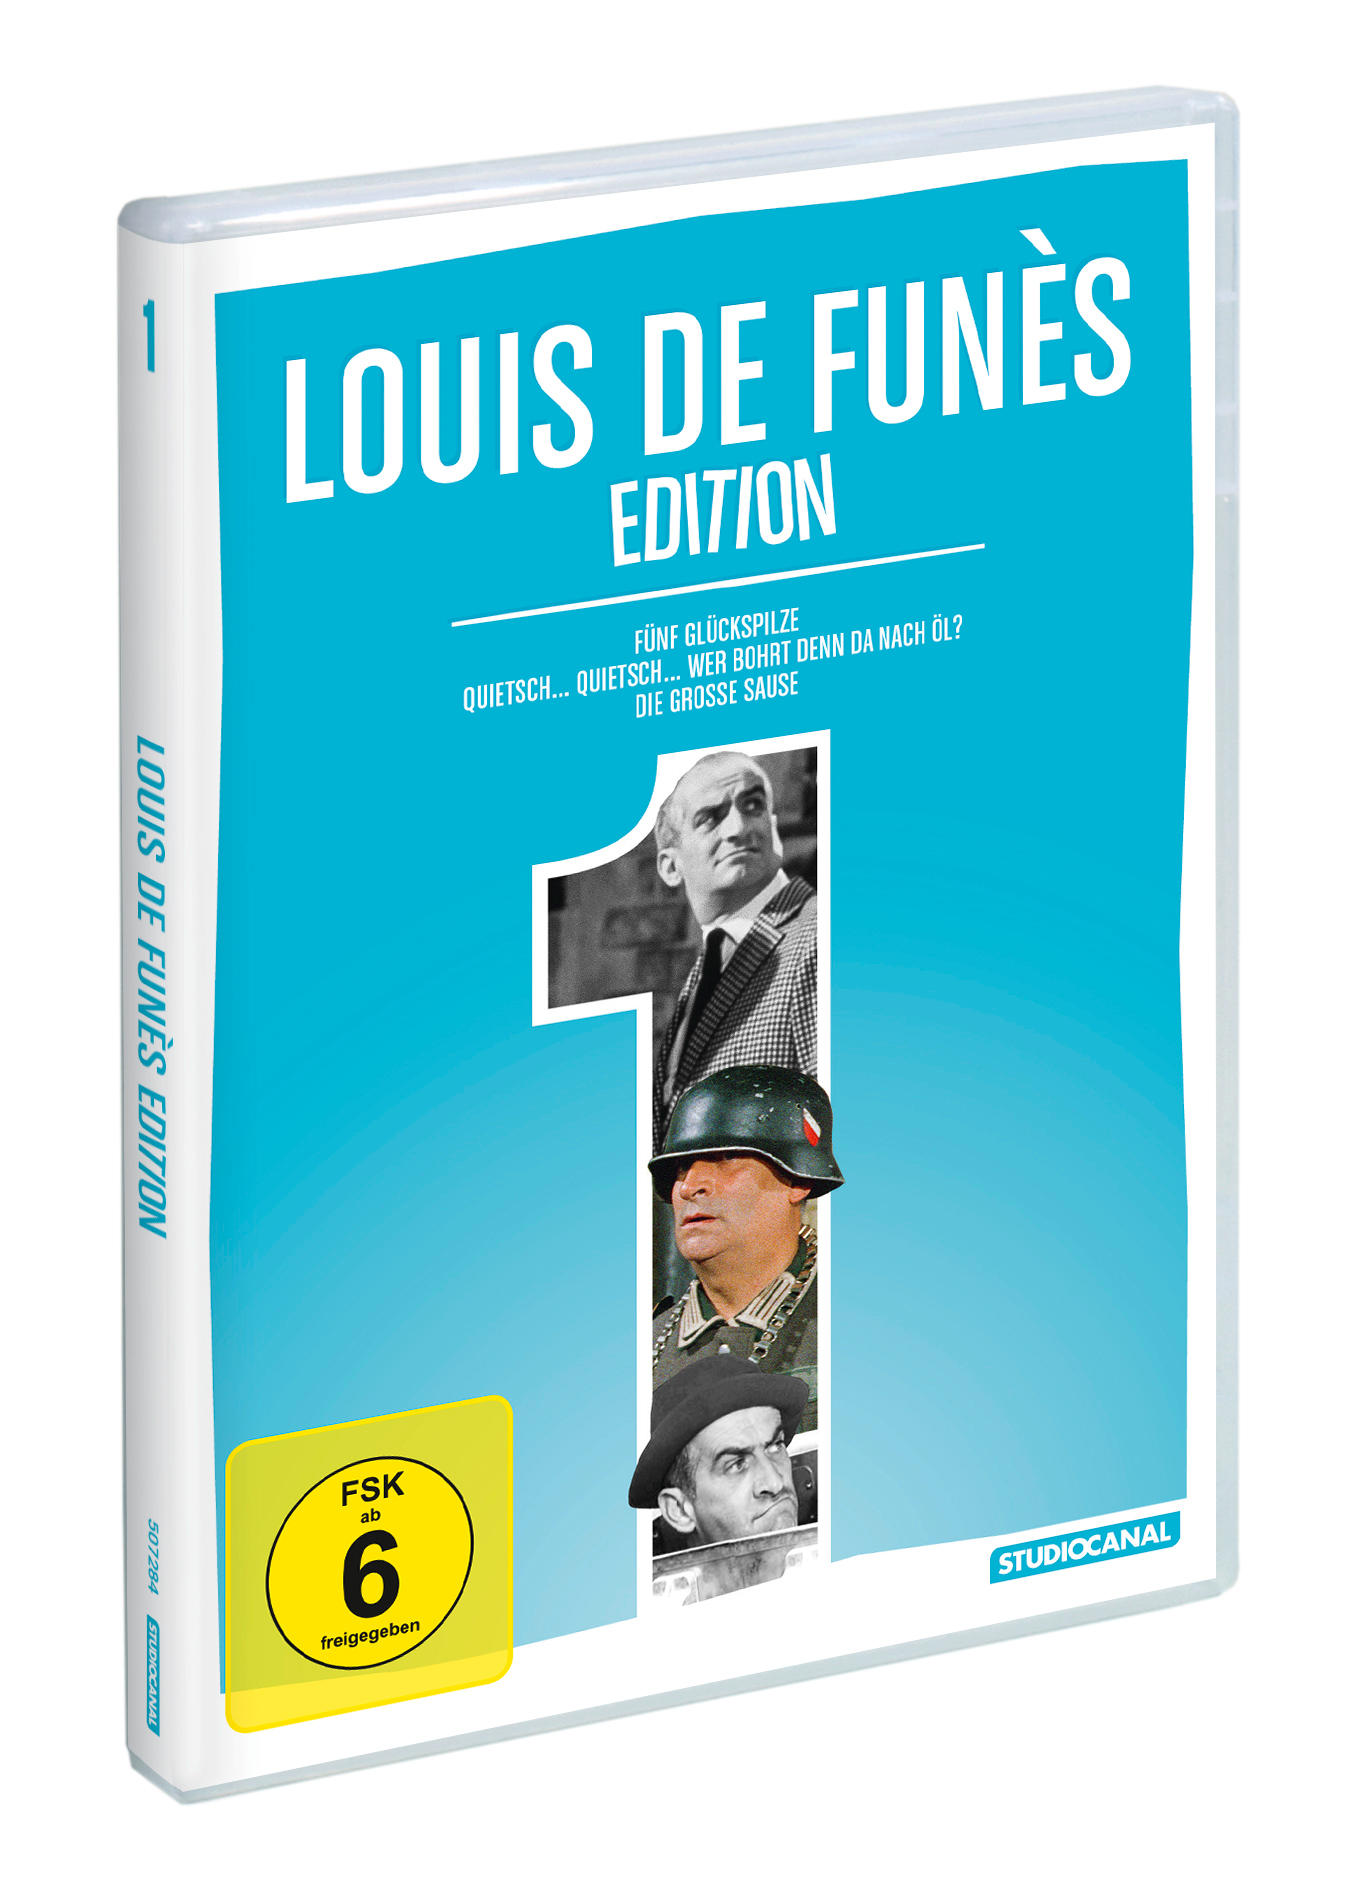 Funès Louis de Edition DVD 1